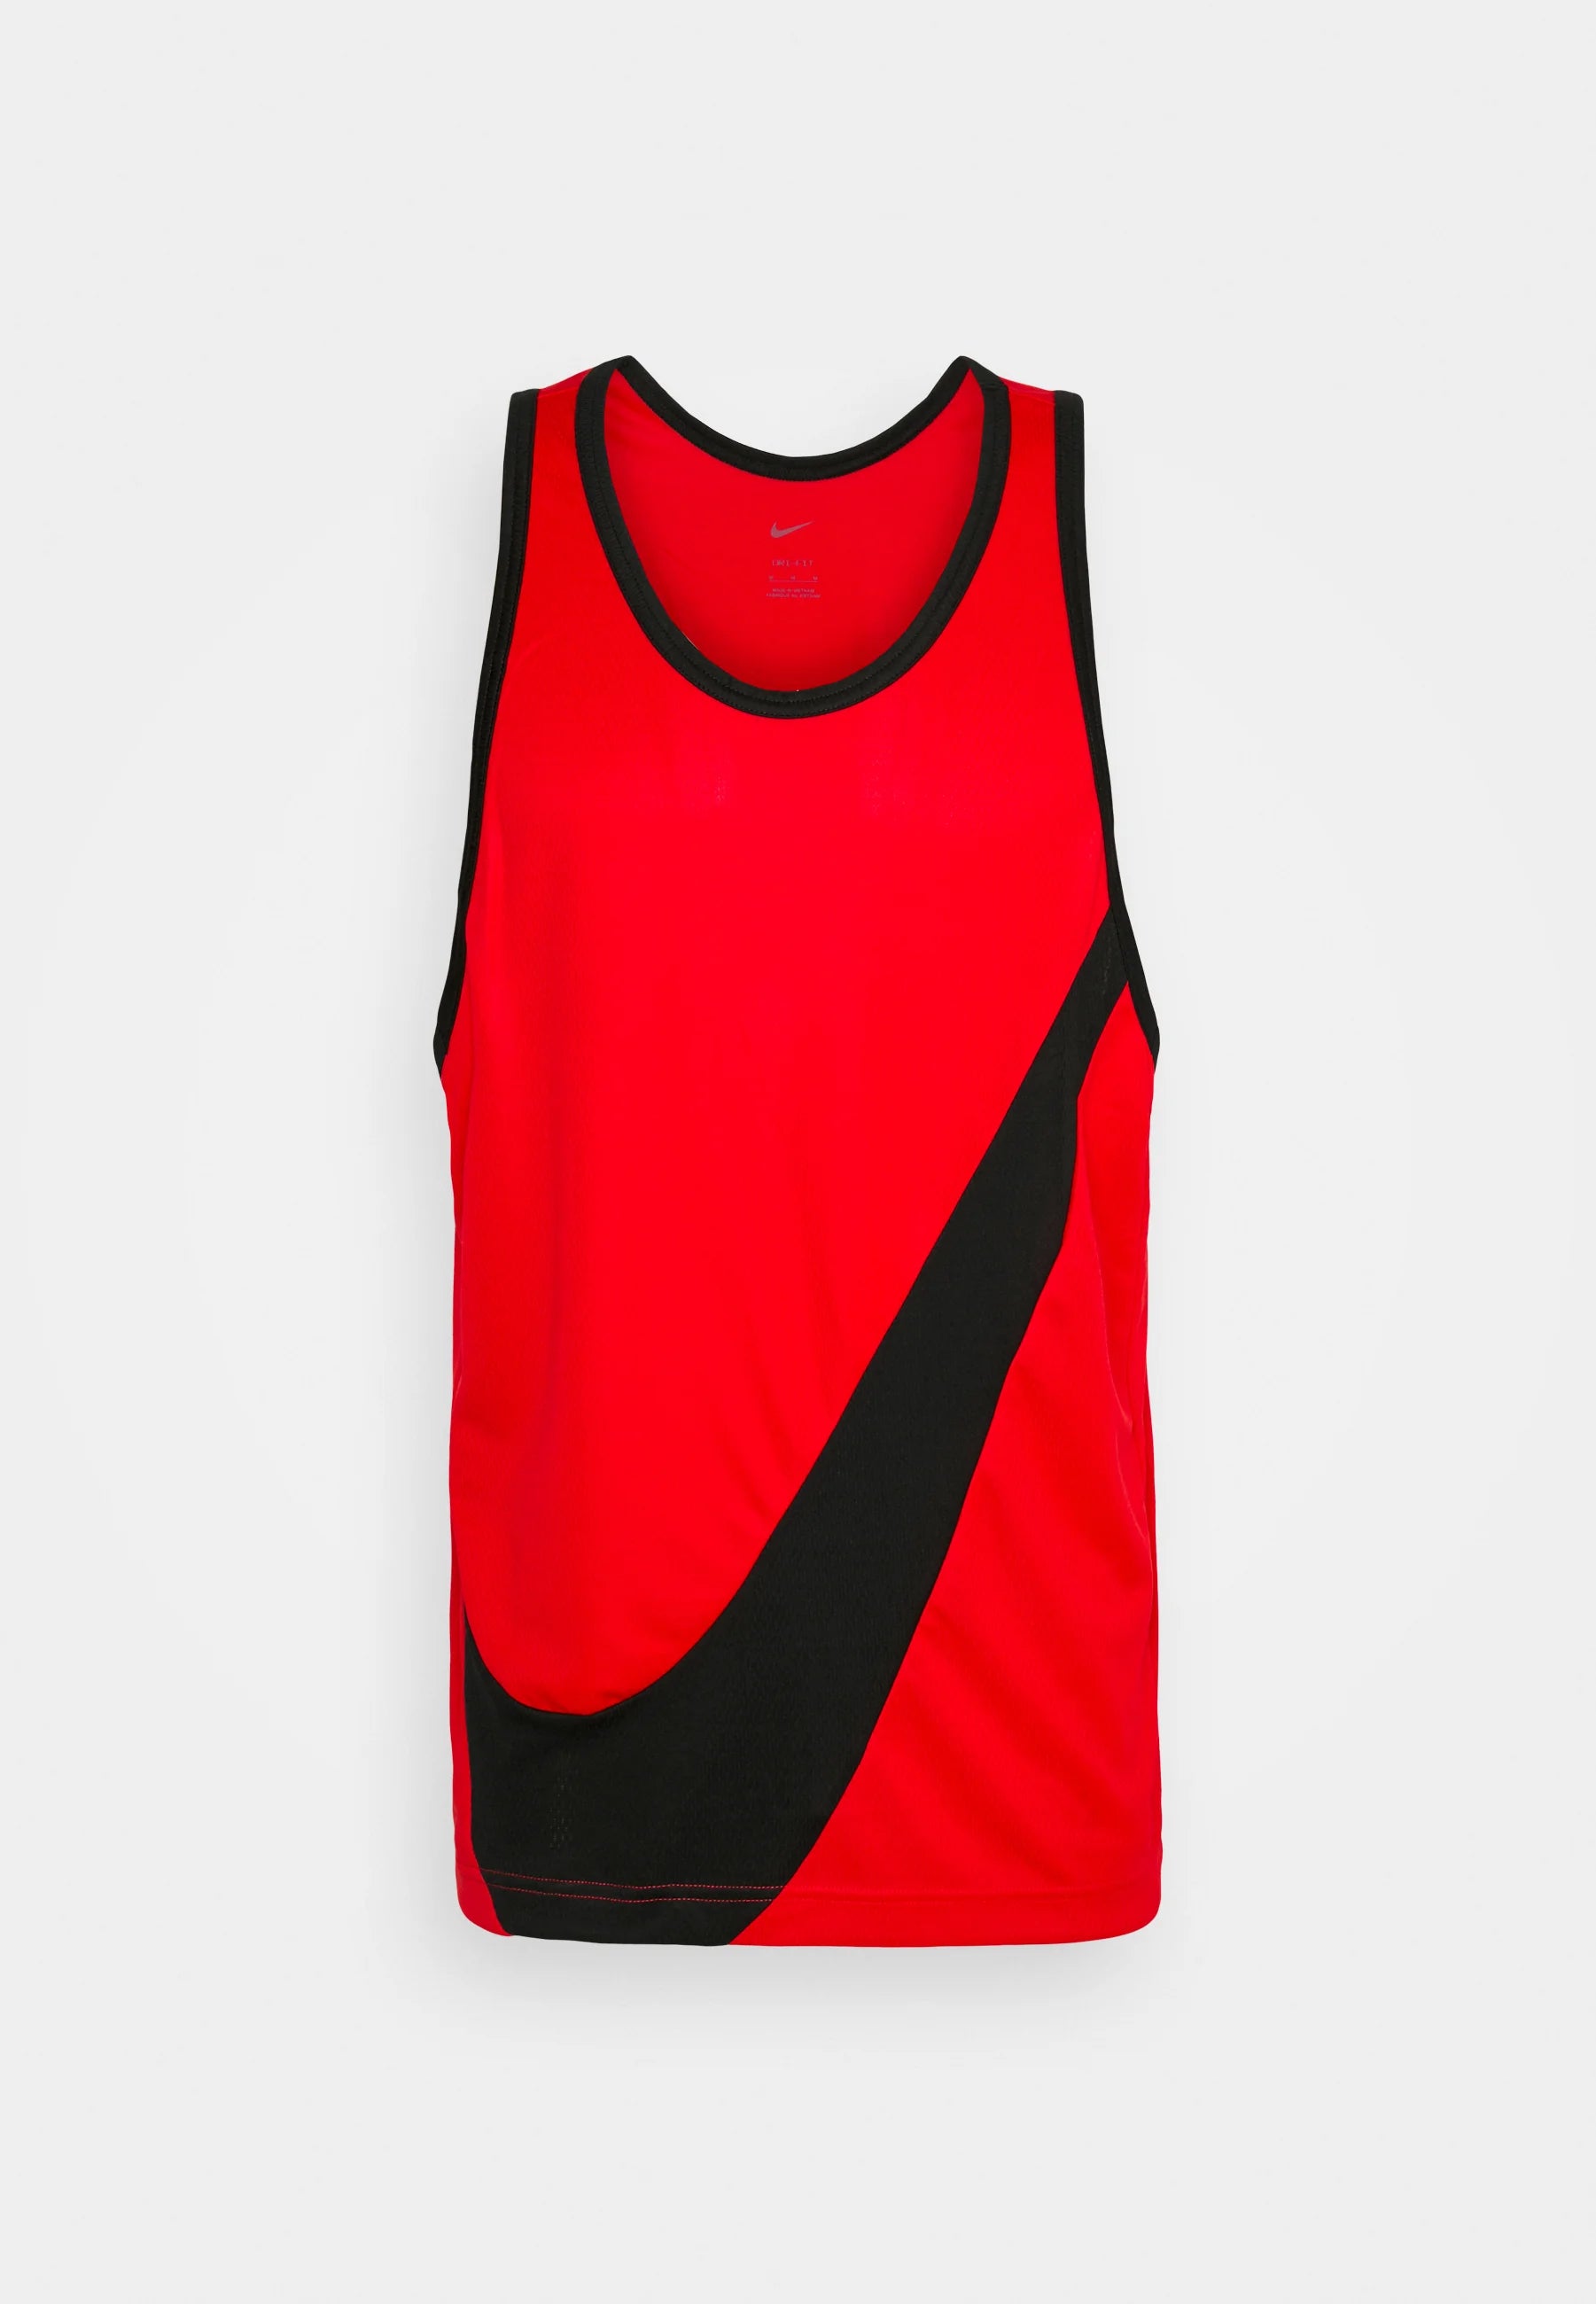 Haut Nike Performance, rouge/noir, taille : L